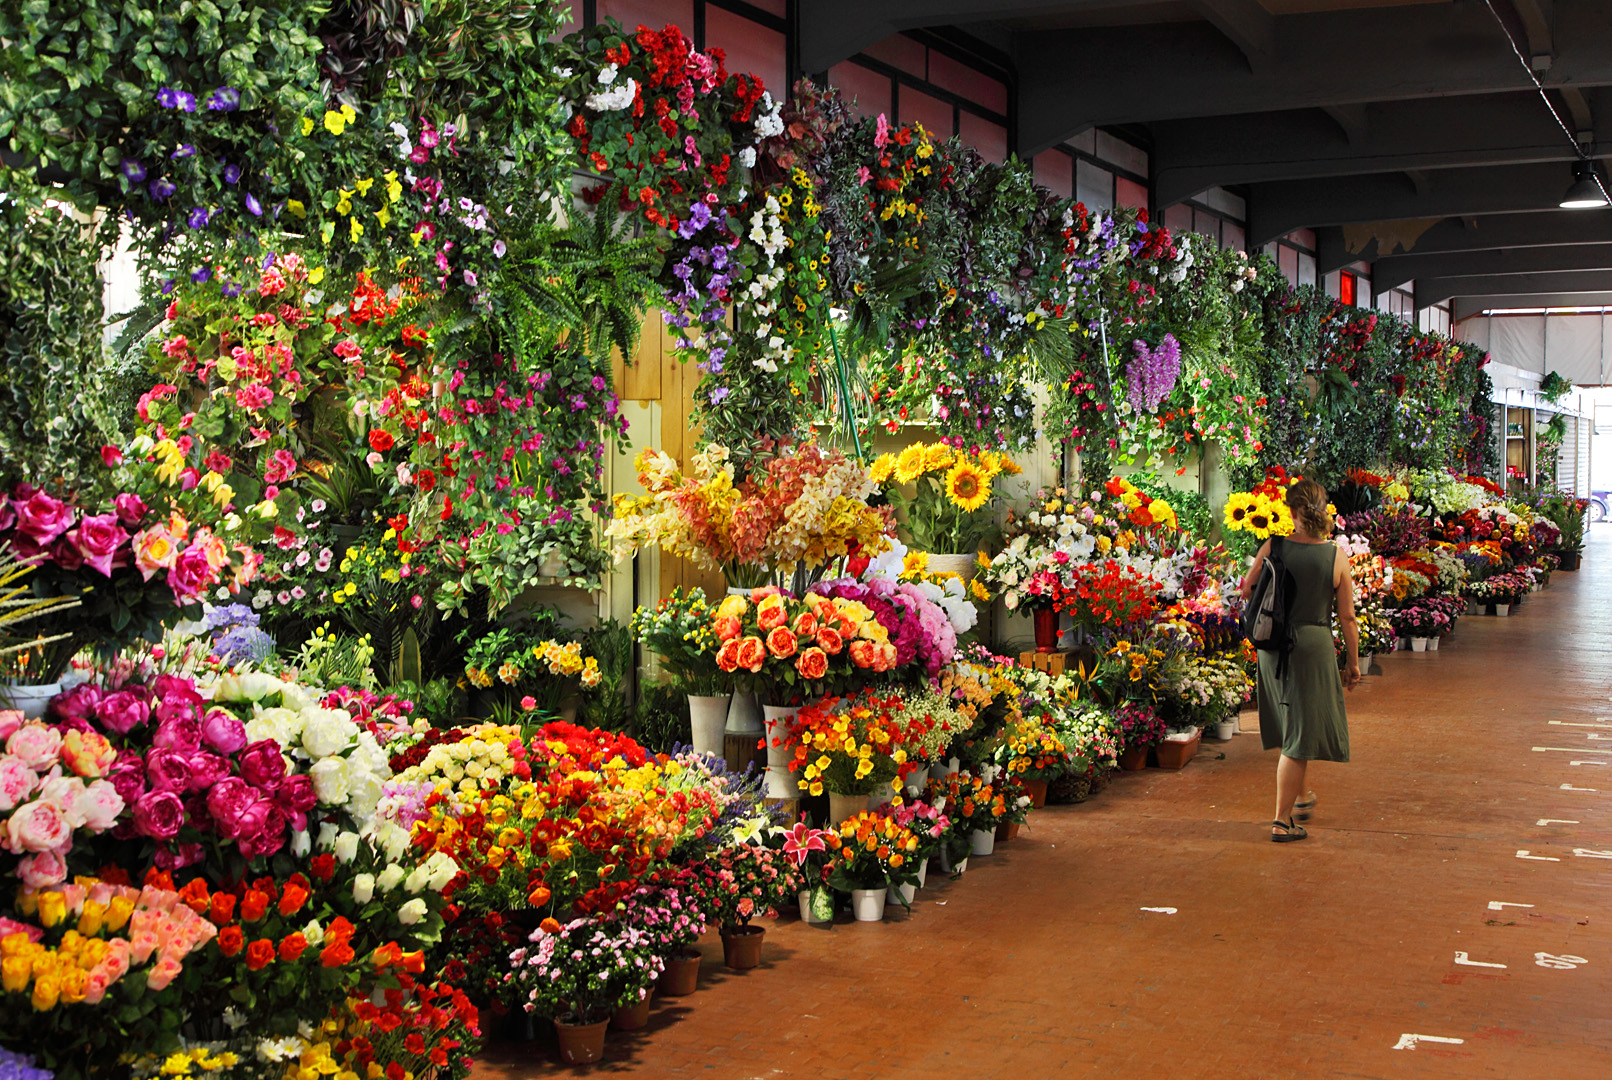 Exterior del mercado, totalmente lleno de distintos arrglos florales de diferentes tamaños y tipos de flores